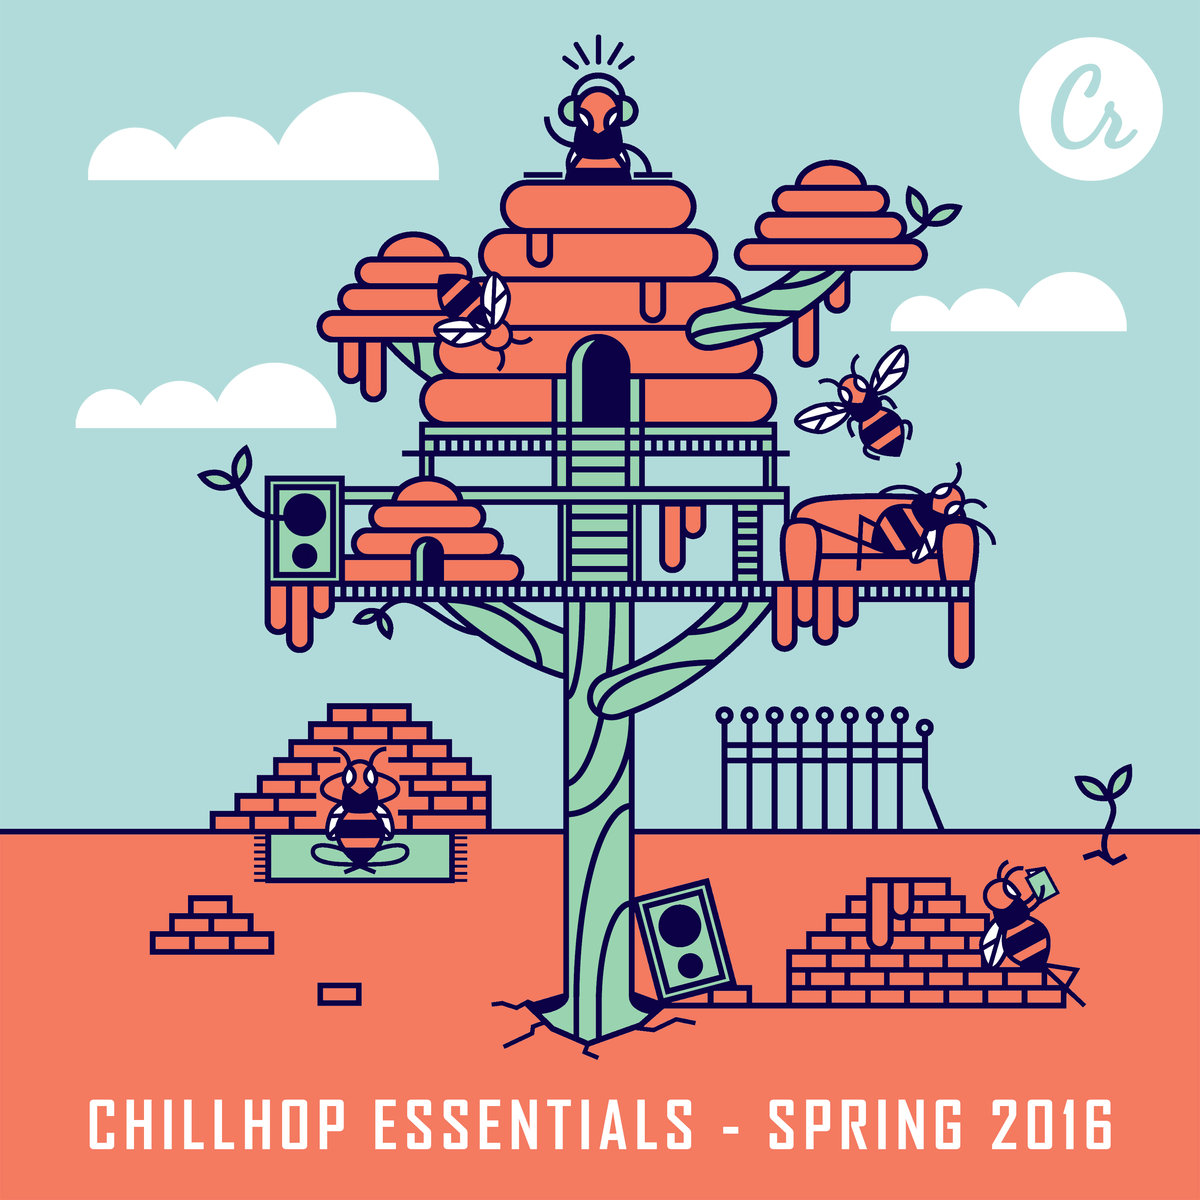 Stream___descarga_chillhop_essentials_-_spring_2016